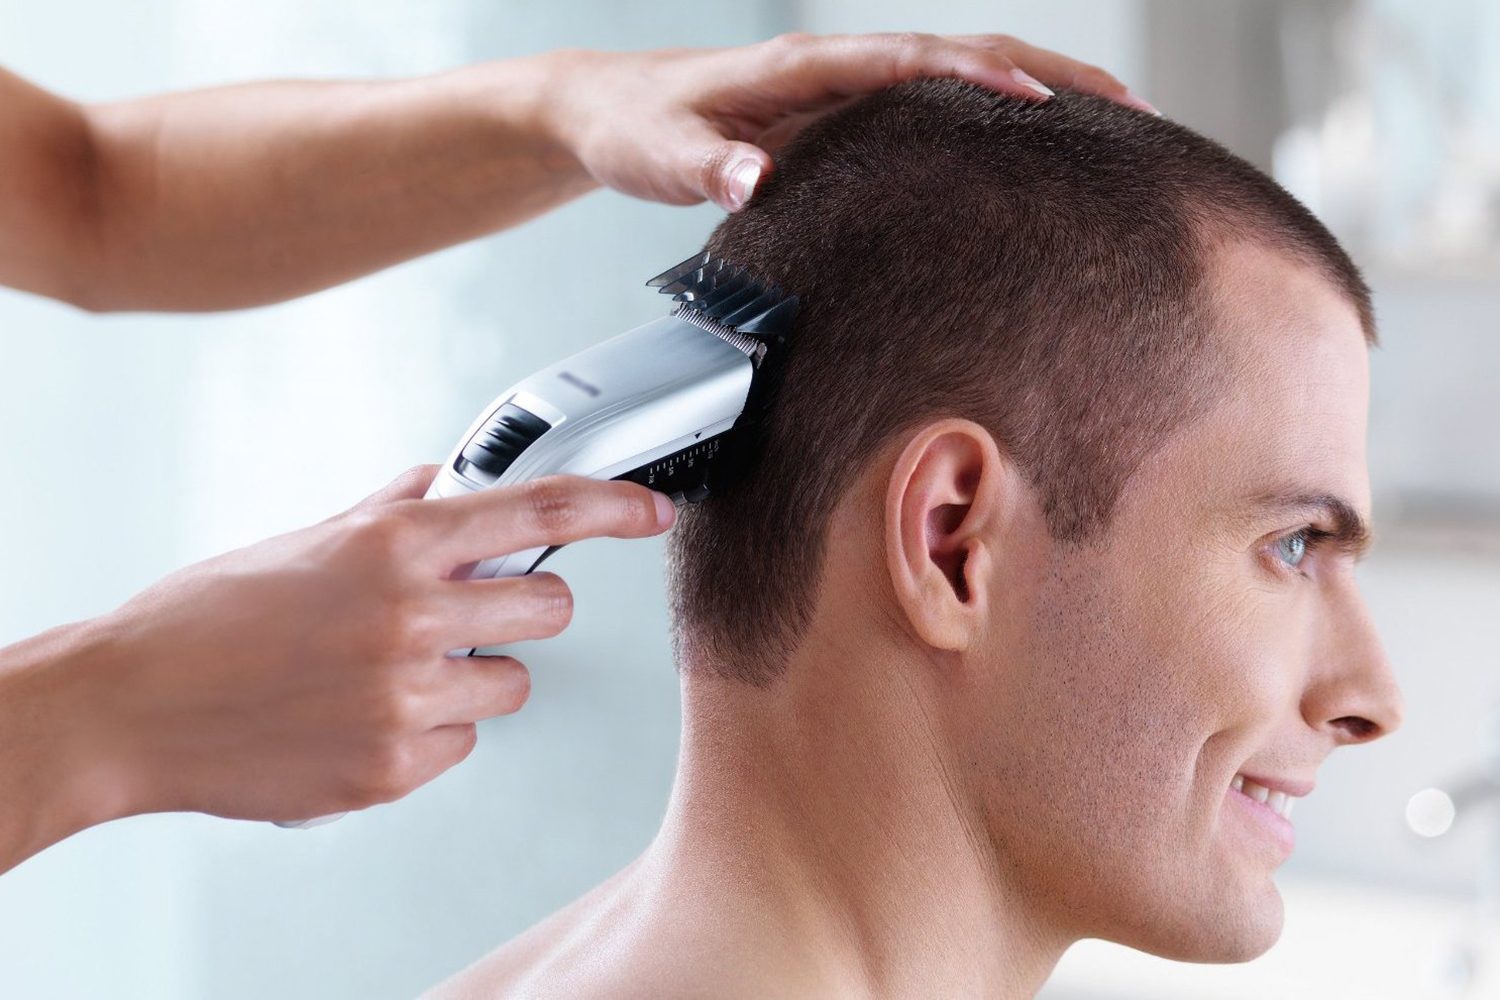 TÓC NAM CHÂN PHƯƠNG LÀ GÌ  Dạy nghề tóc cấp tốc cắt tóc nam nữ học phí  bảng giá địa chỉ